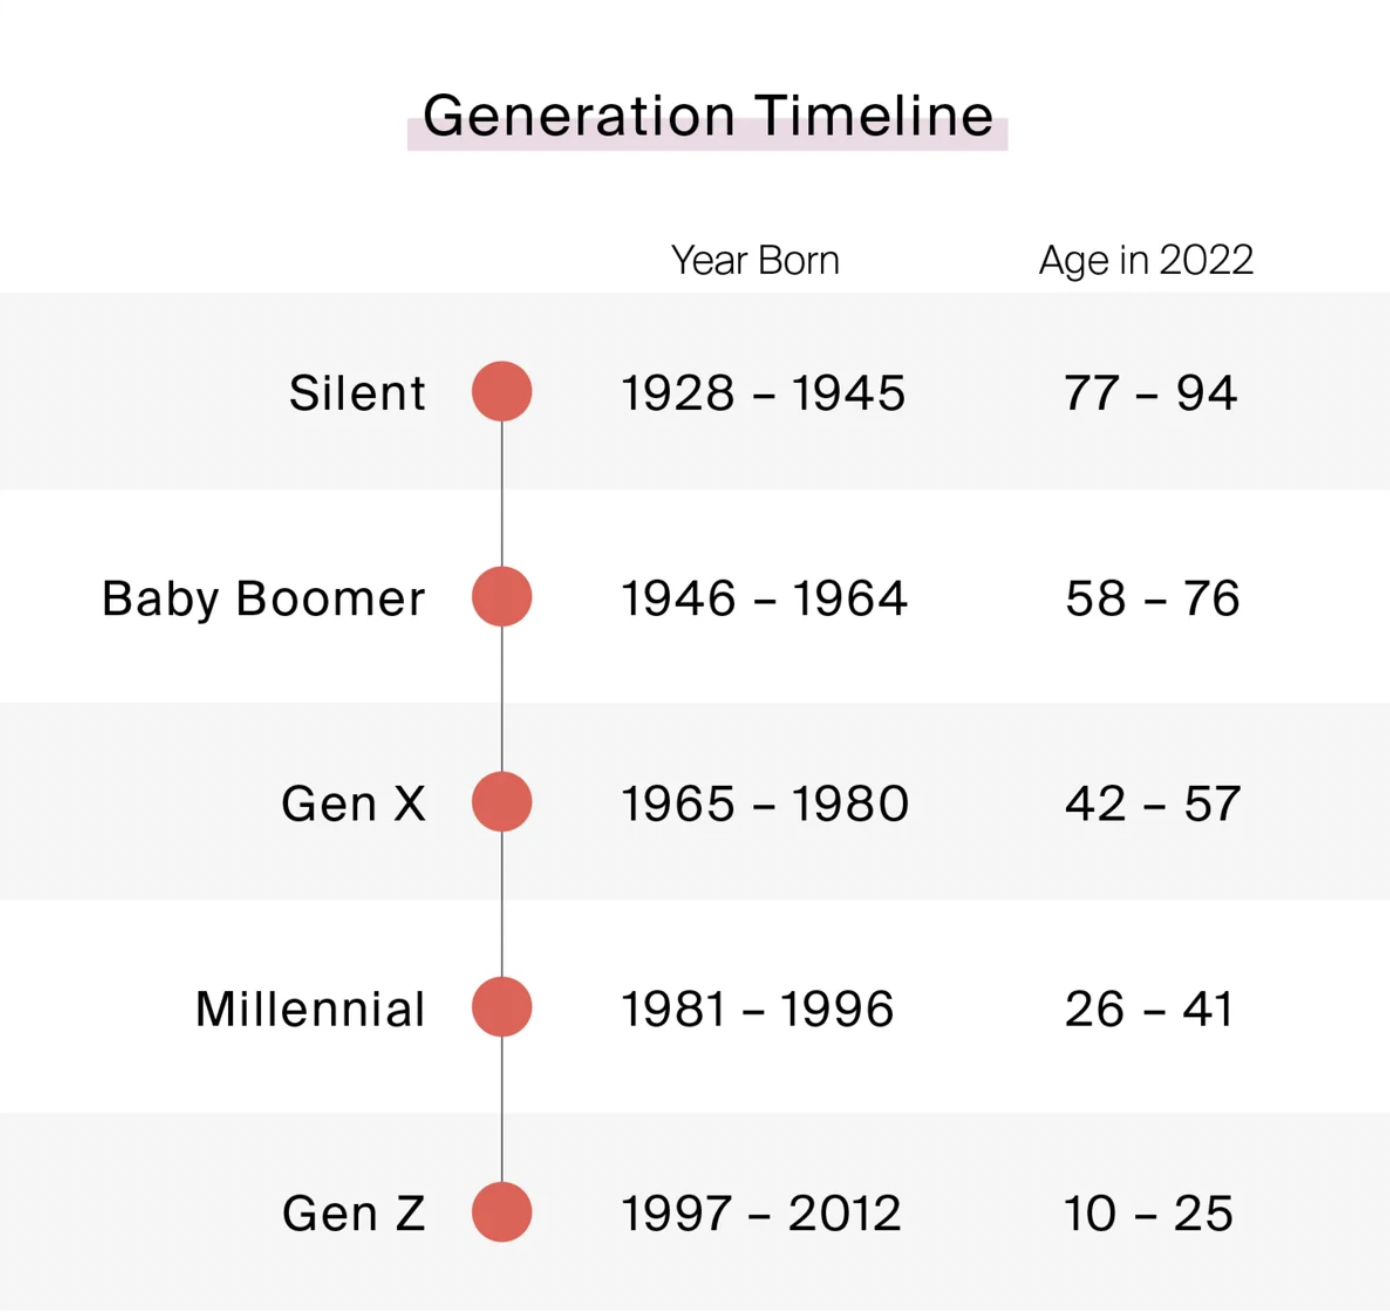 Generation Timeline 